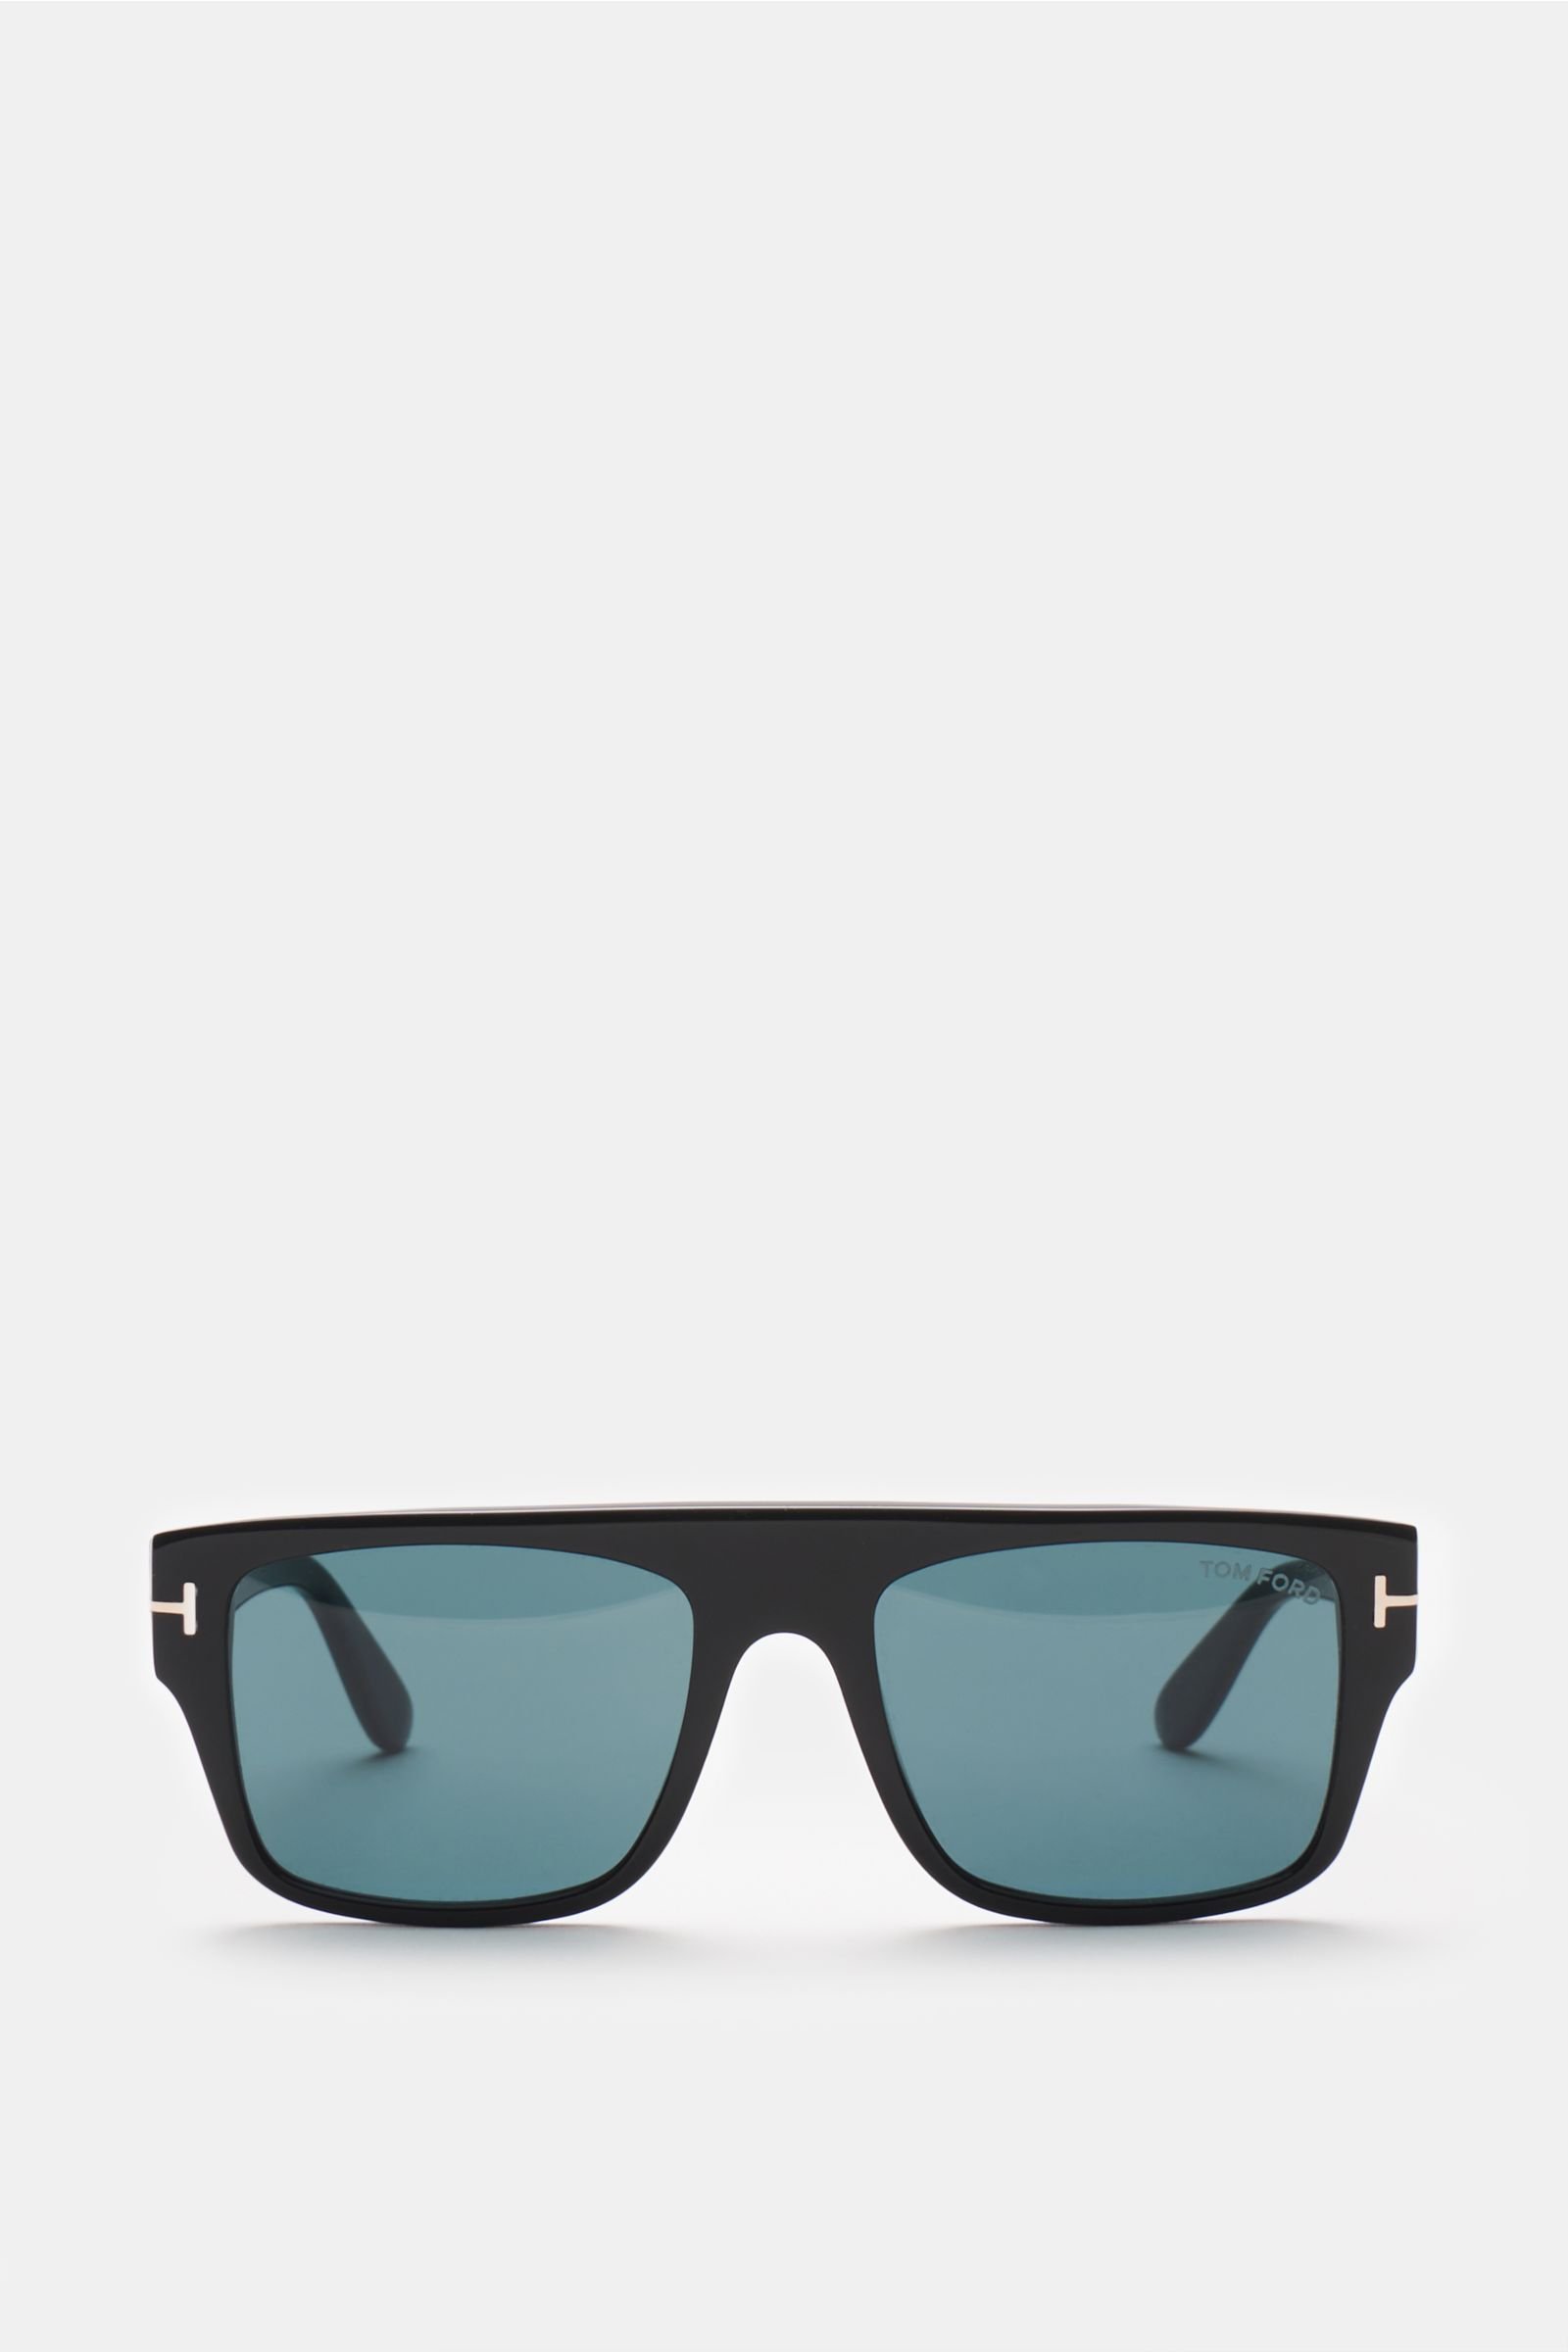 Sunglasses 'Dunning' black/dark blue